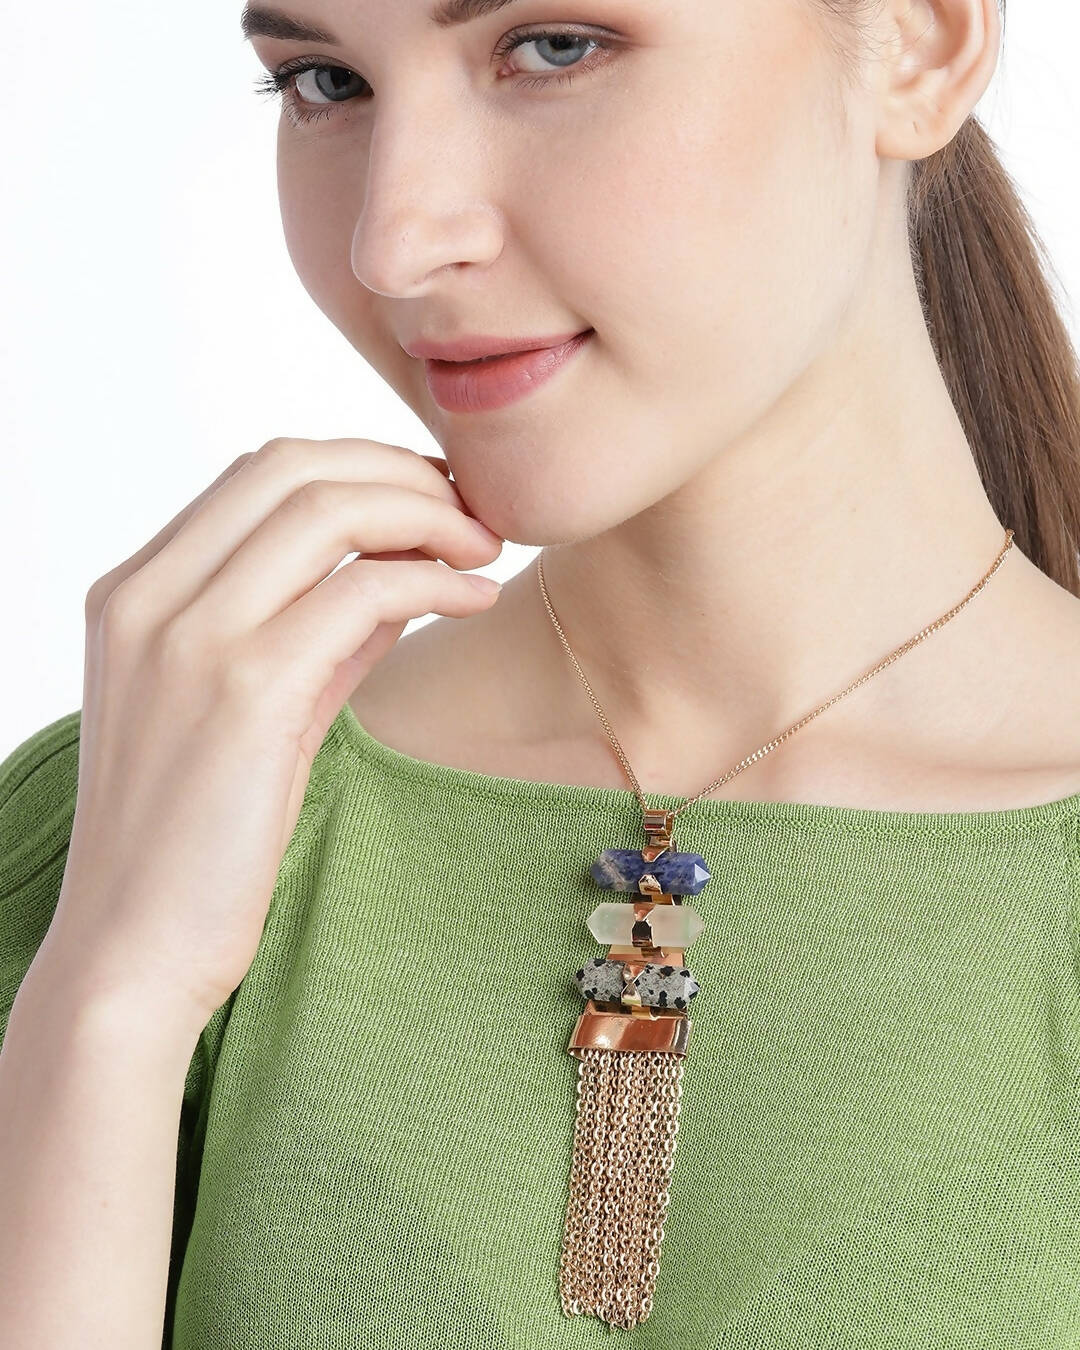 Slaks World Fashion Stone Beads Necklace - Gold - Shopzetu